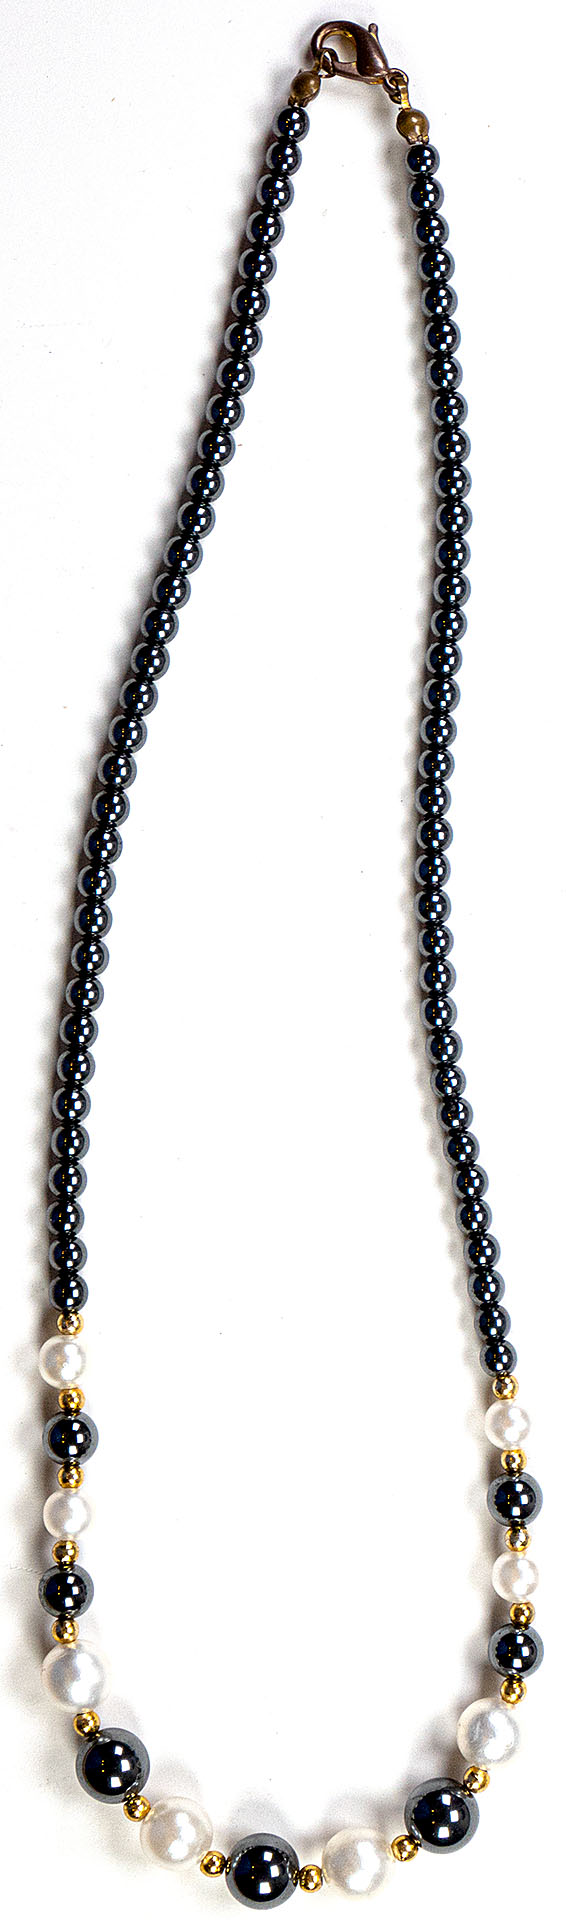 Kette (ca. 42 cm) mit weißen und anthrazitfarbigen, verschieden großen Perlen